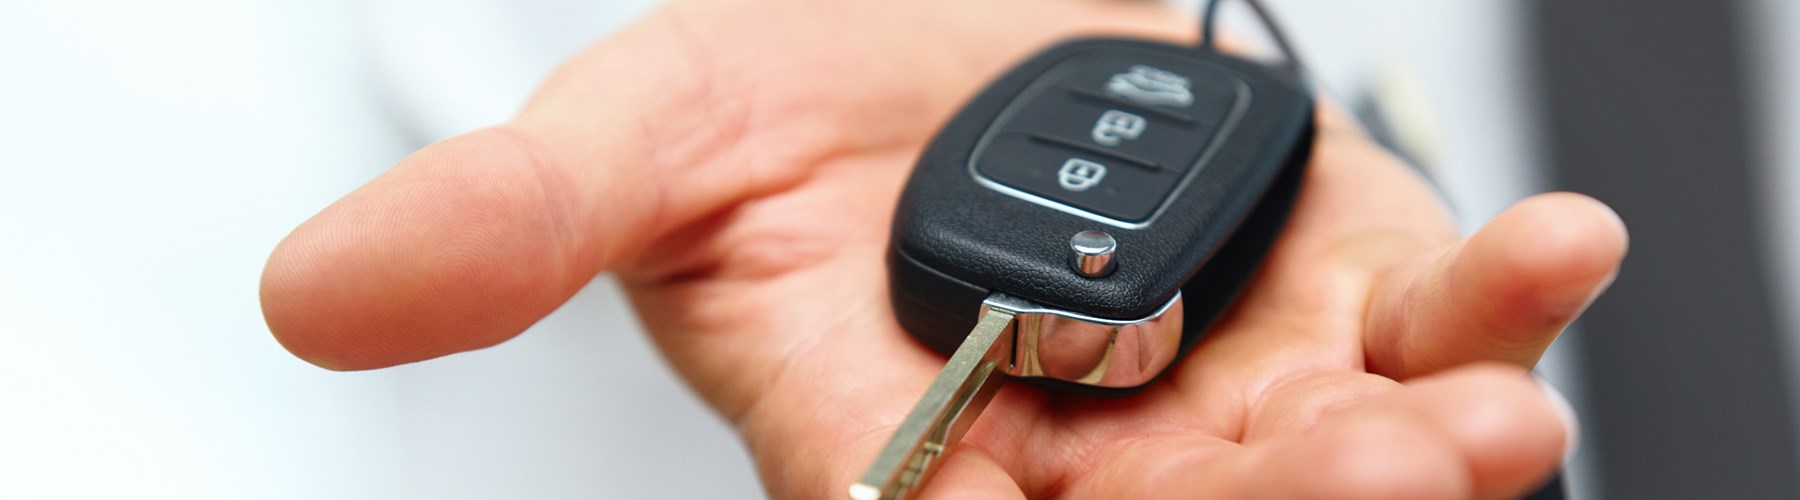 AZ Car Keys Car Key Replacement Services in Phoenix Arizona!